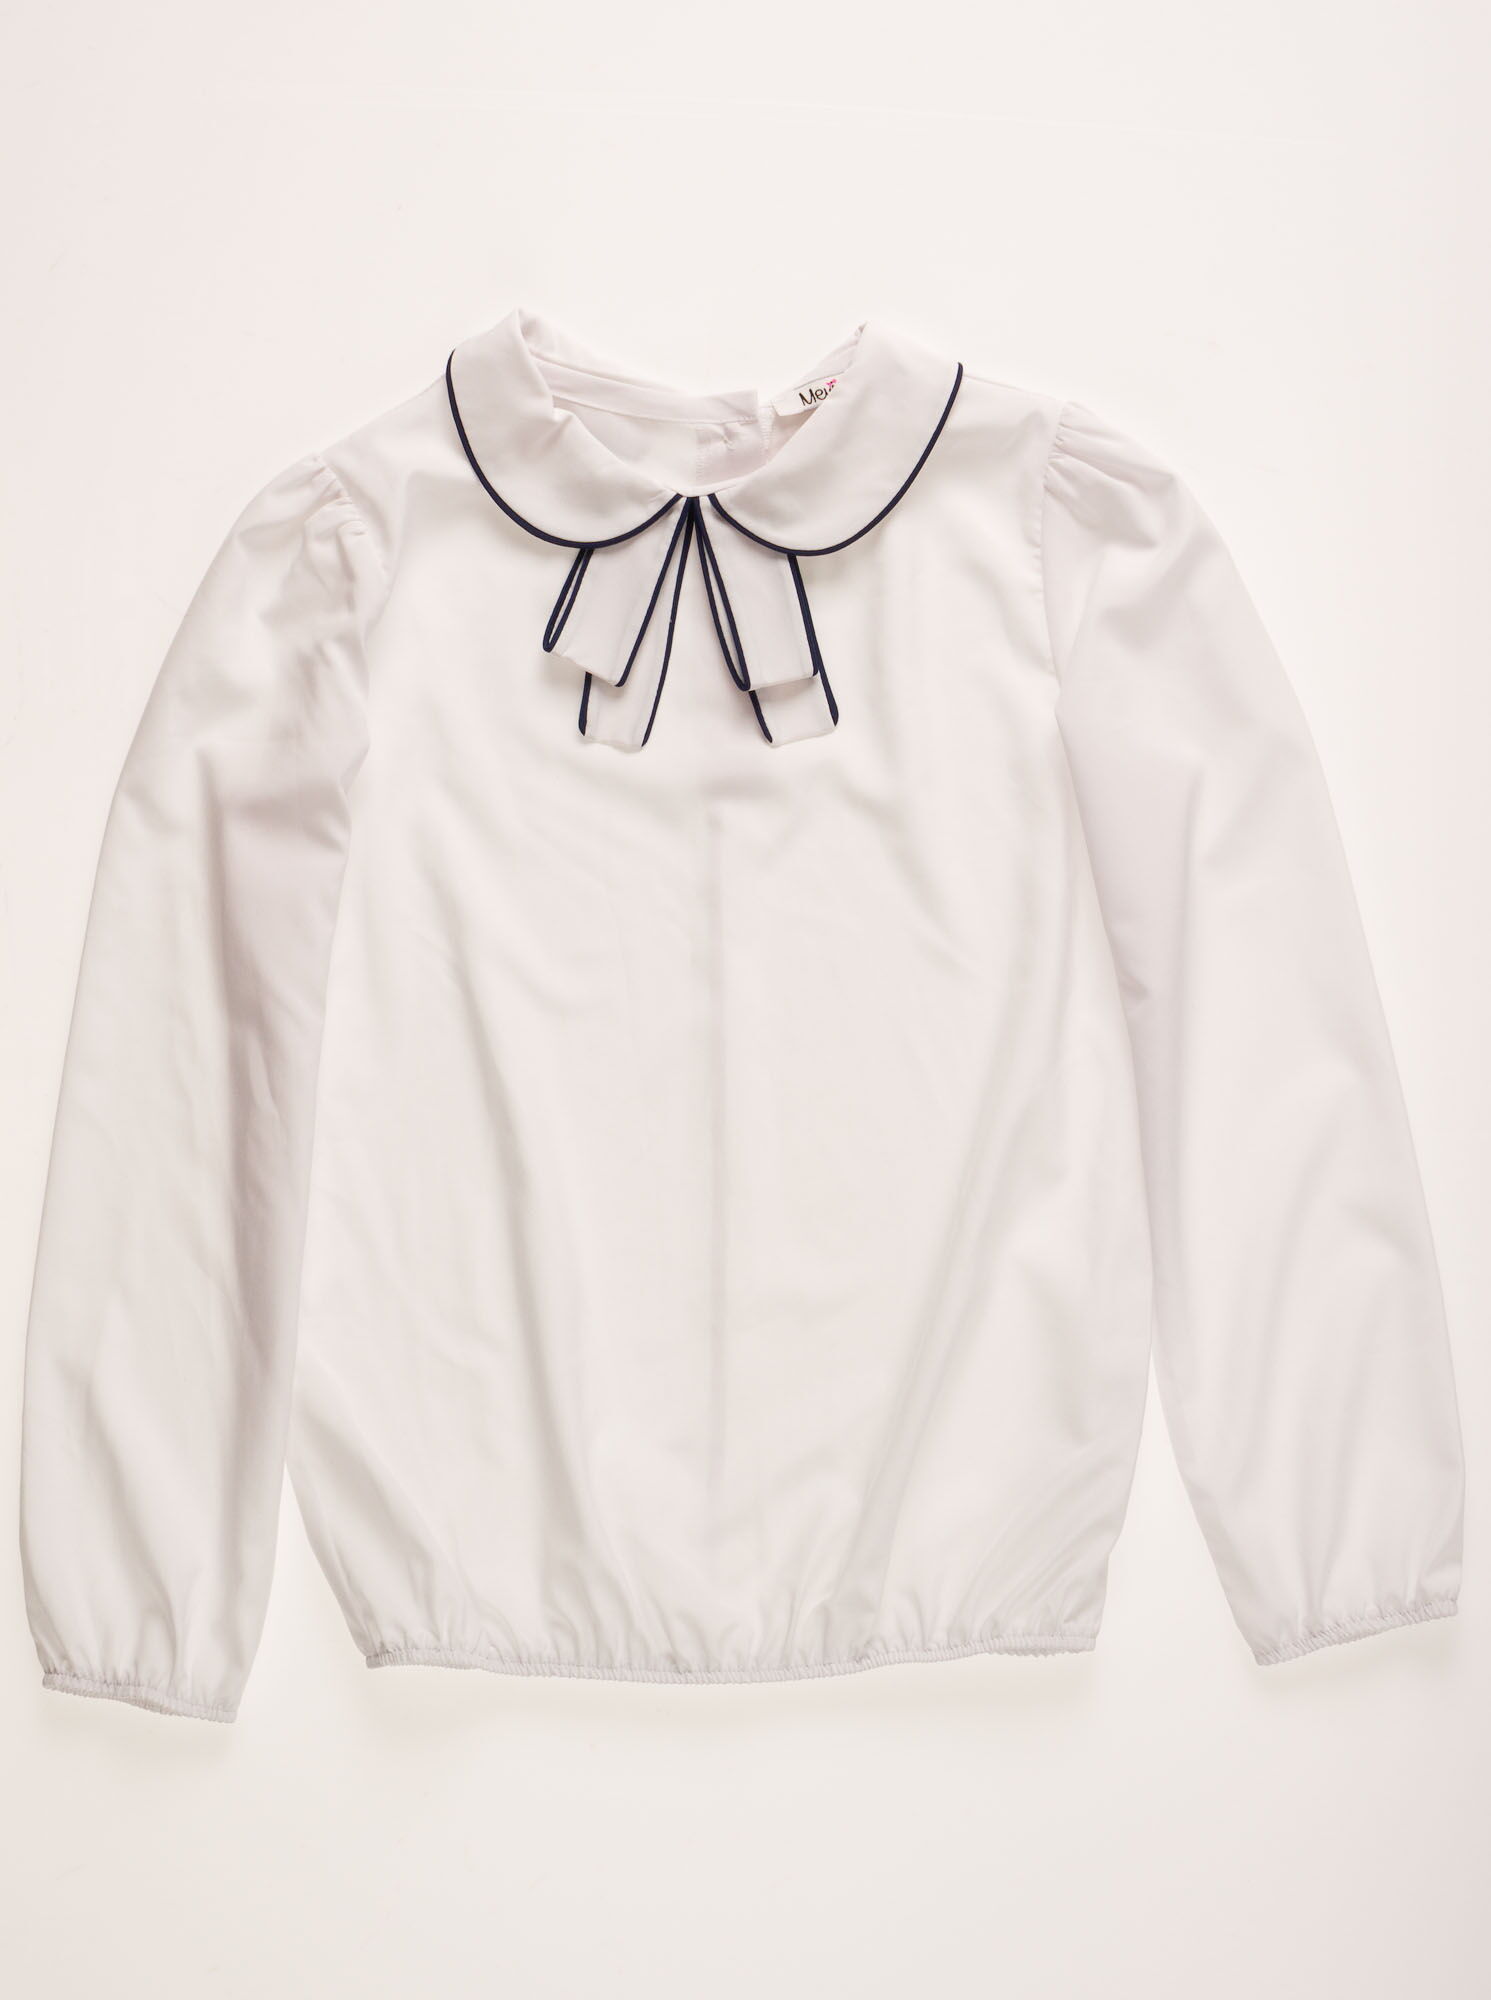 Блузка с длинным рукавом для девочки Mevis белая 2101-02 - размеры